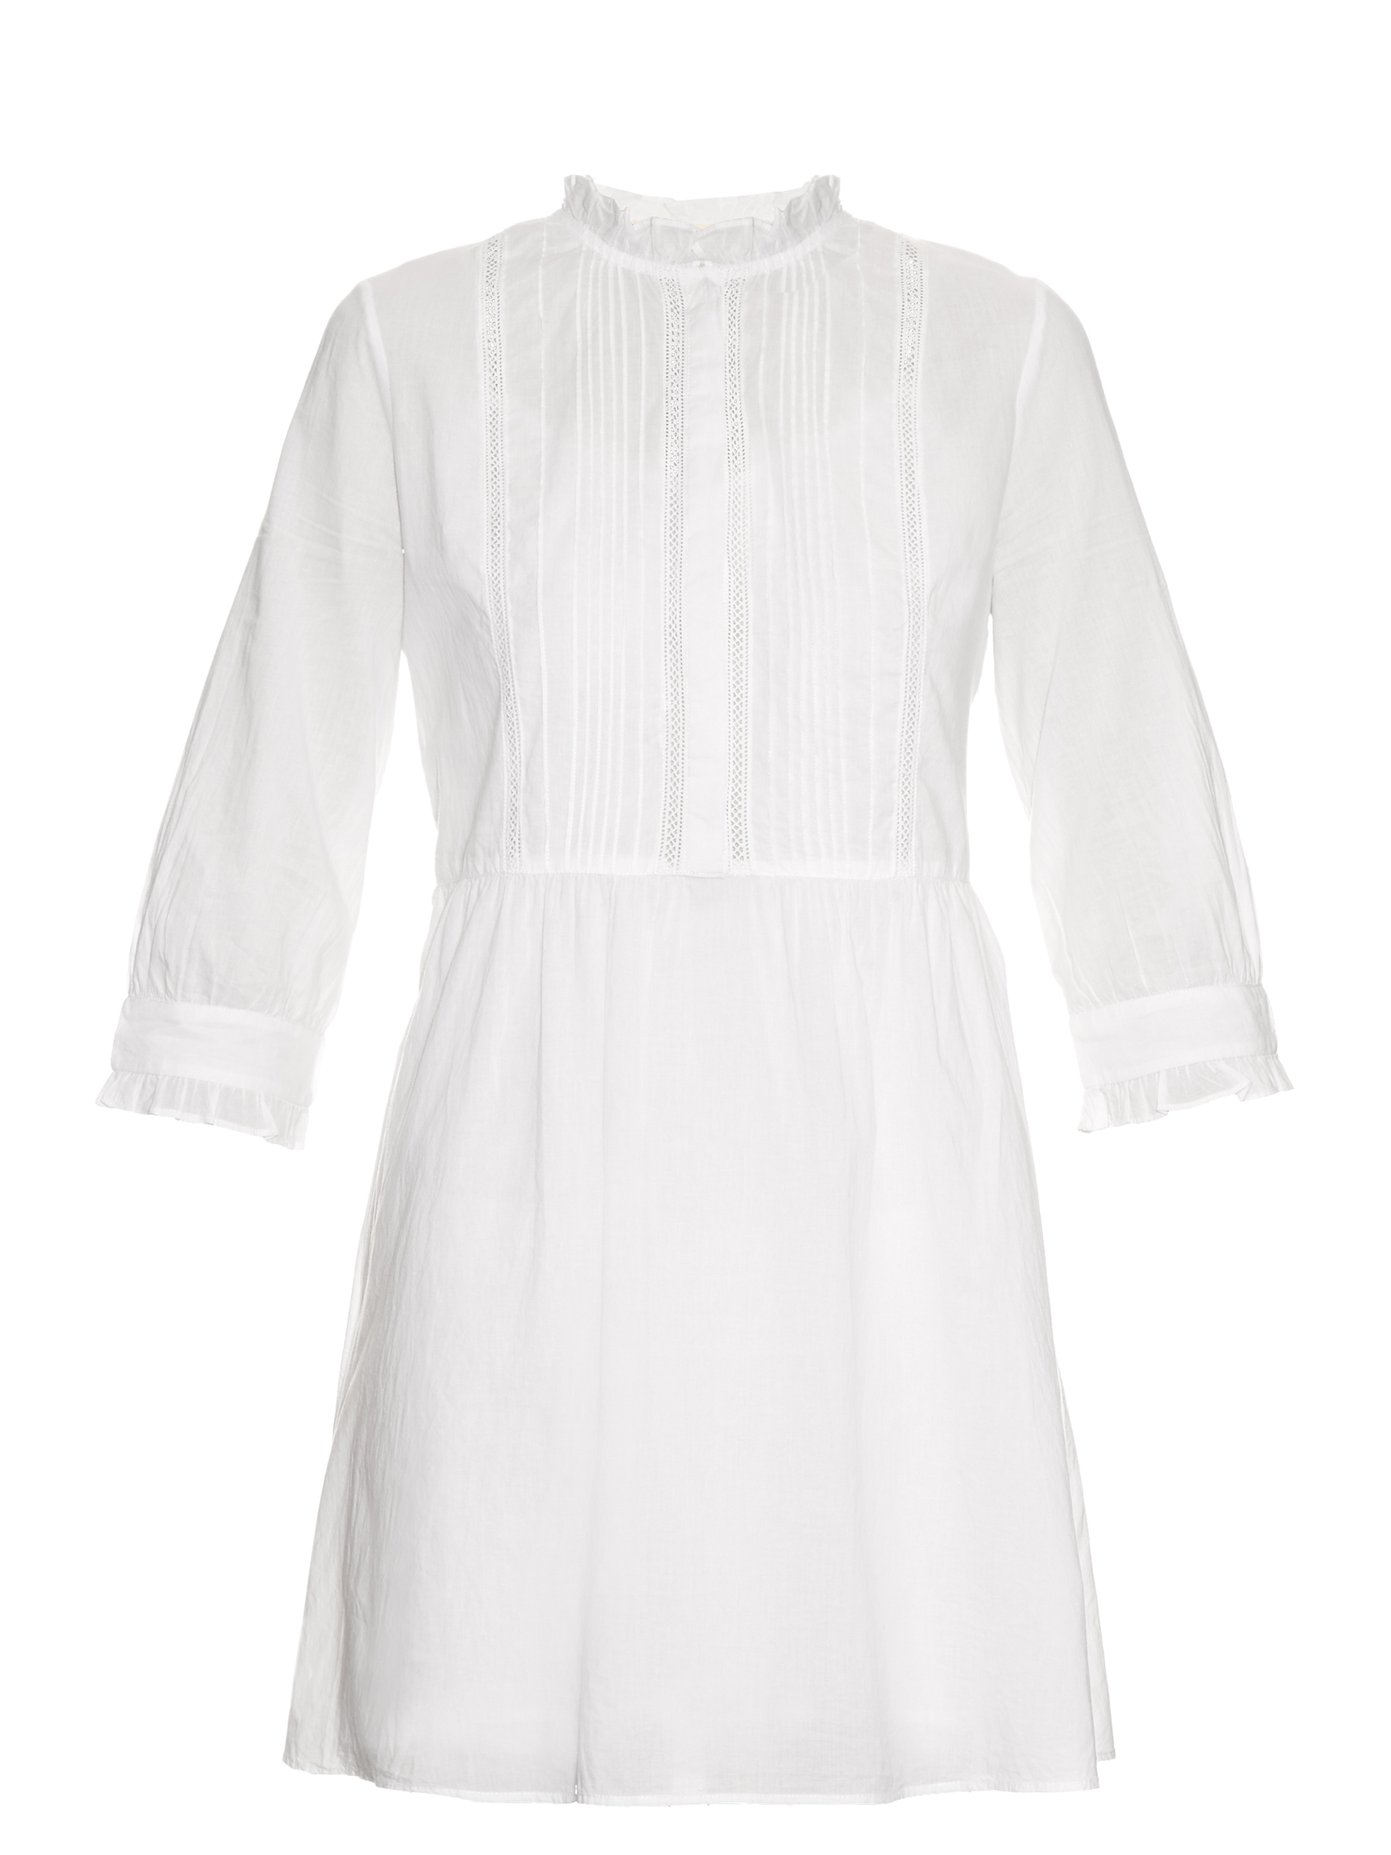 vanessa bruno white dress